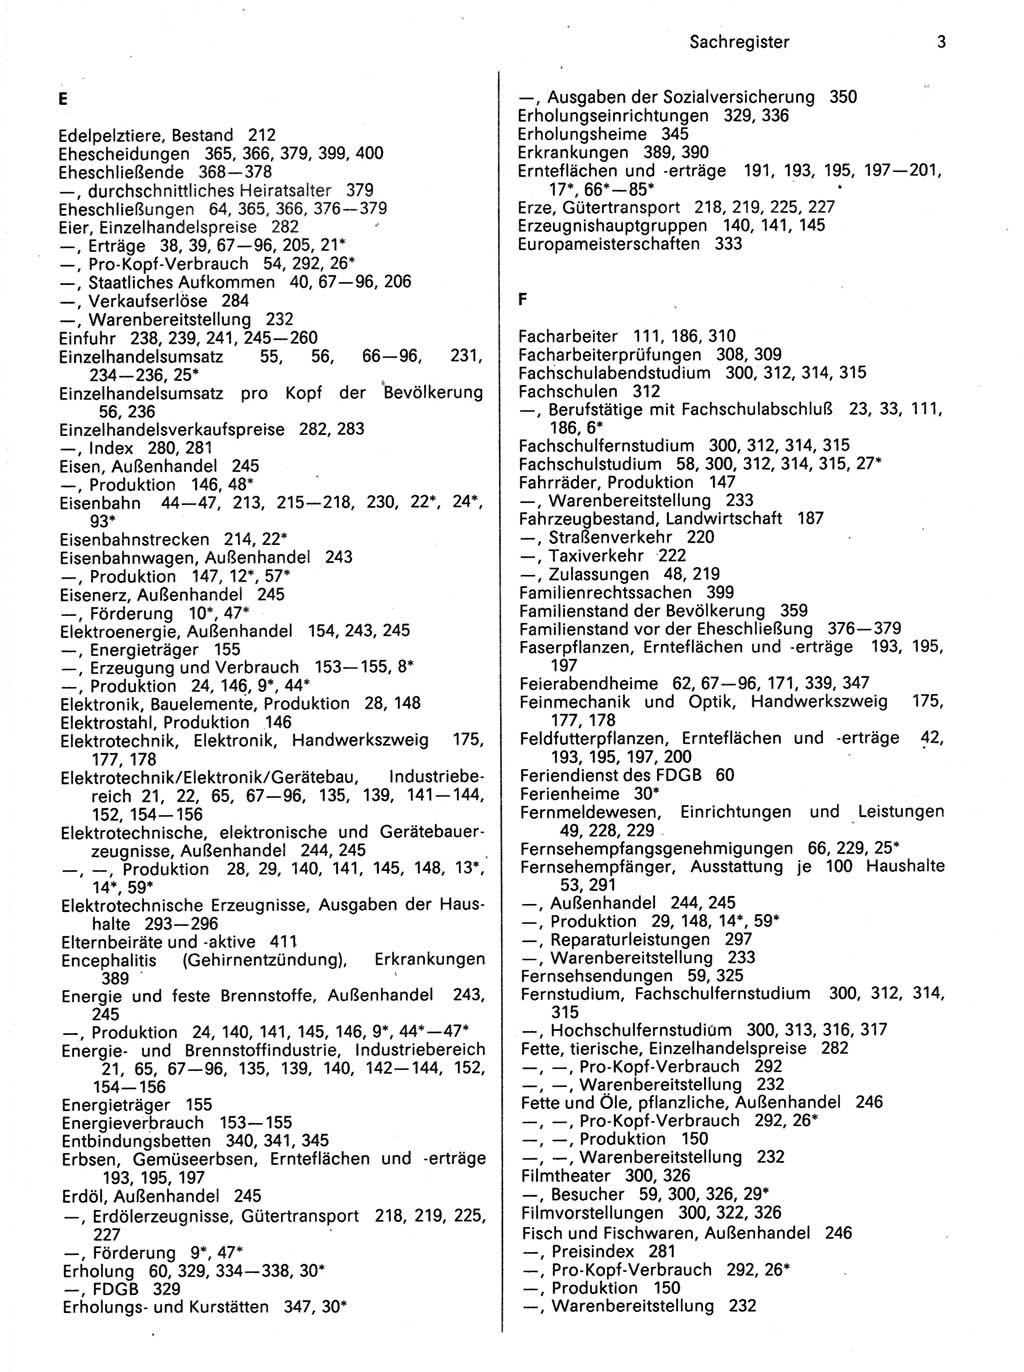 Statistisches Jahrbuch der Deutschen Demokratischen Republik (DDR) 1989, Seite 3 (Stat. Jb. DDR 1989, S. 3)